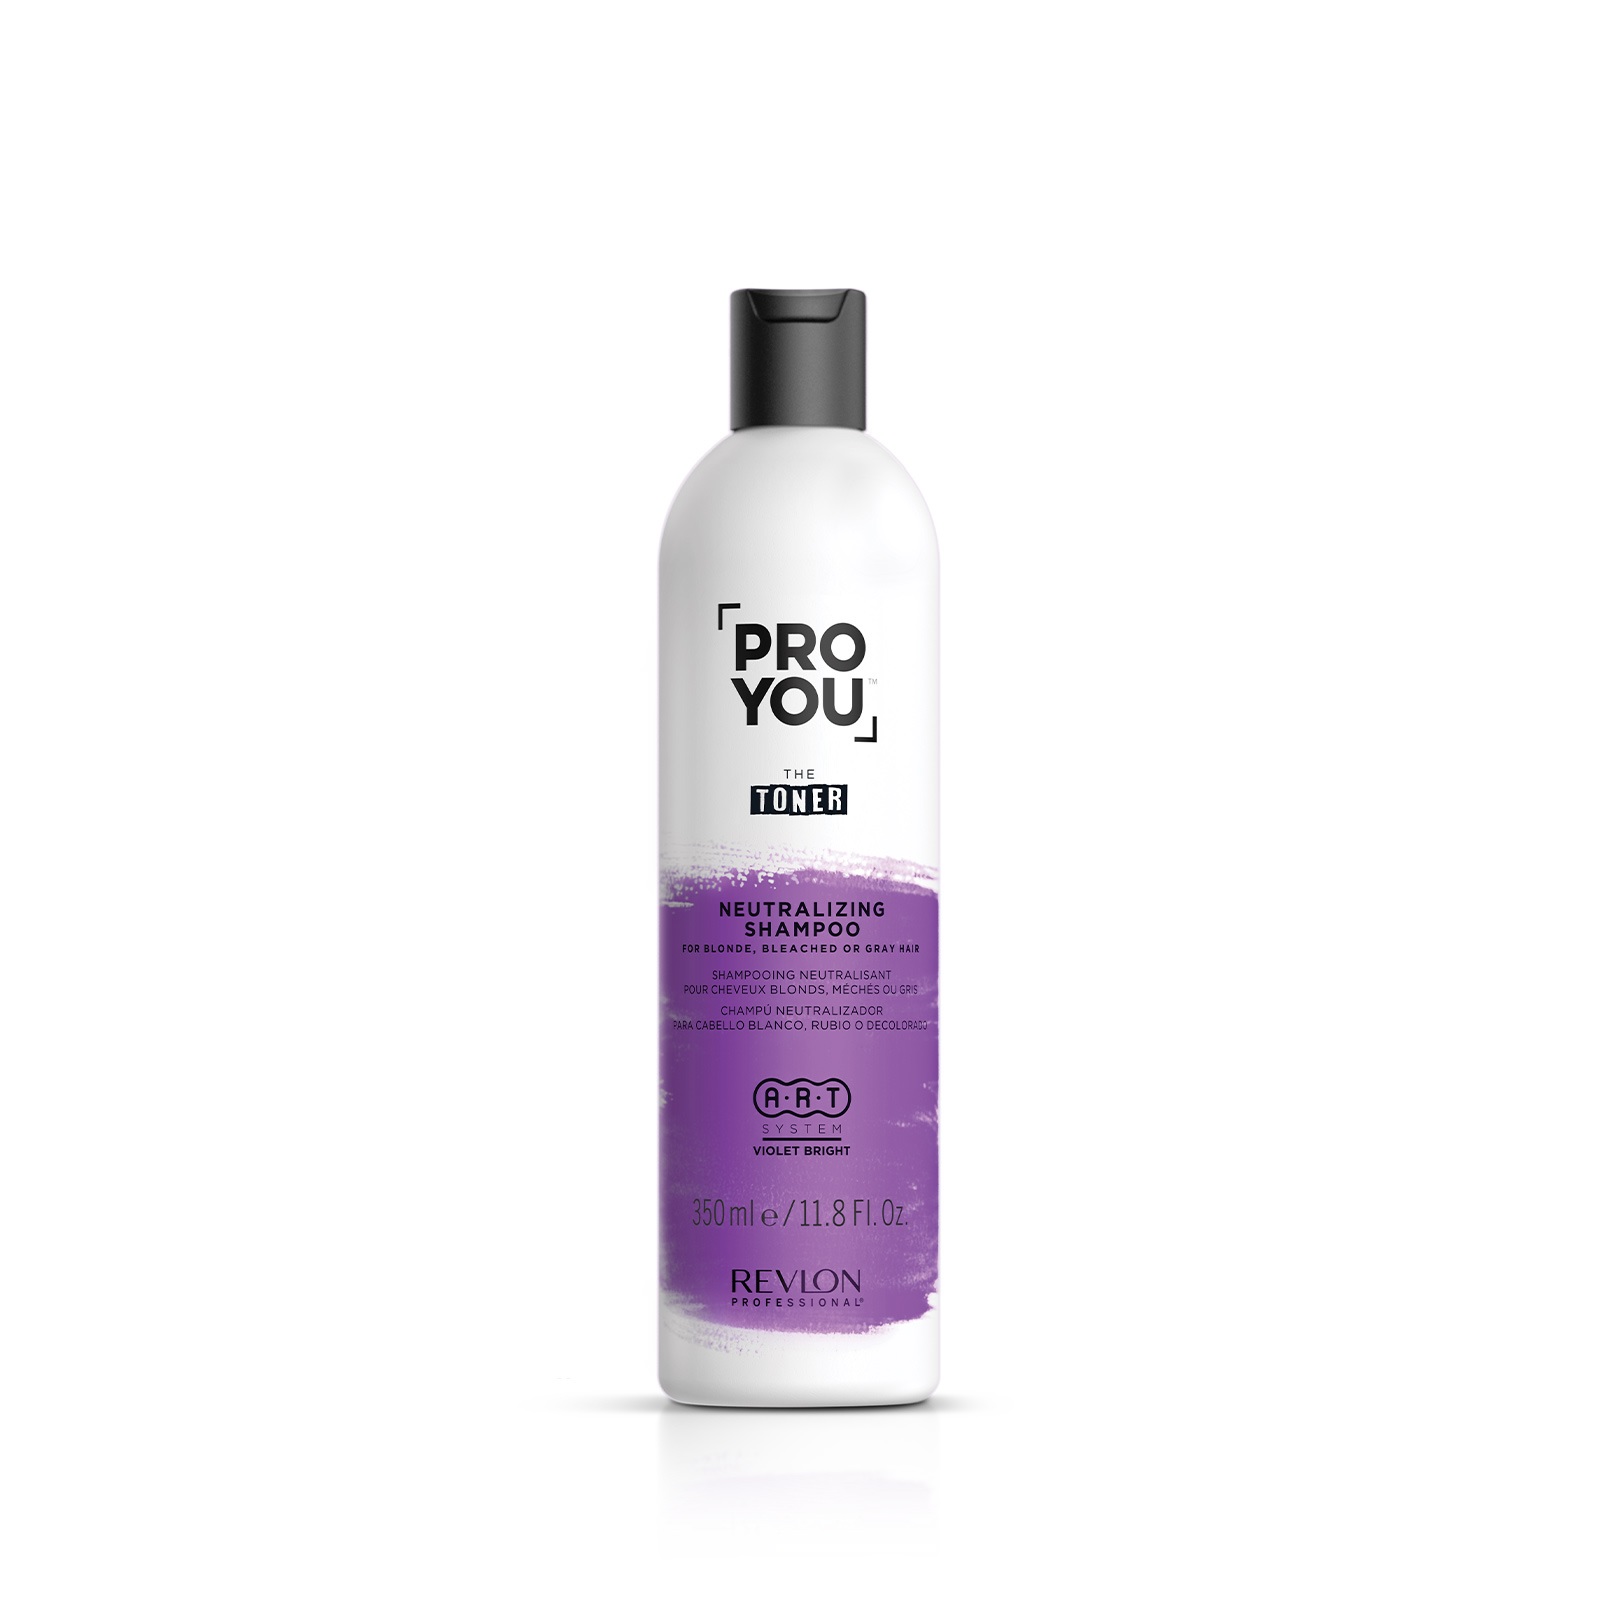 REVLON, Нейтрализующий шампунь для светлых обесцвеченных и седых волос Pro You Toner, 350 мл.